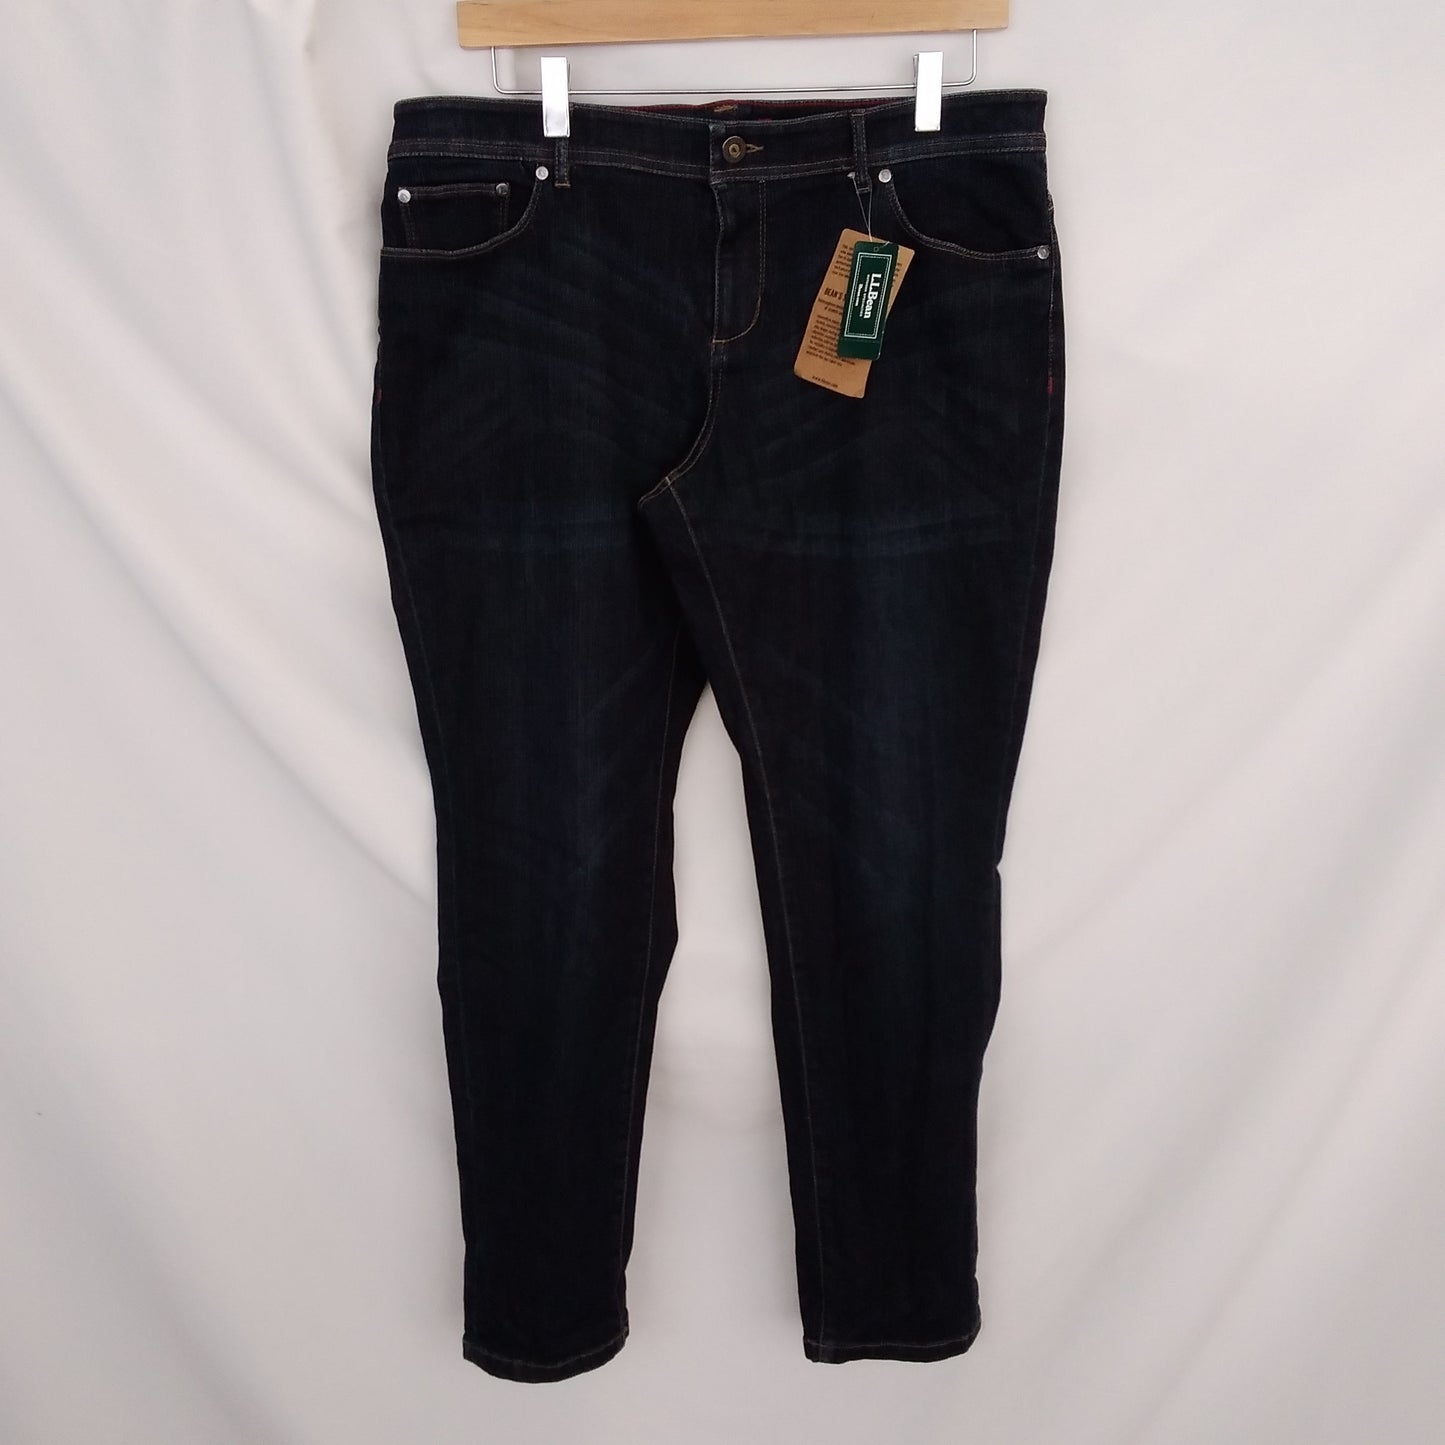 NWT - L.L. Bean Stretch Denim Jeans - 14 Petite